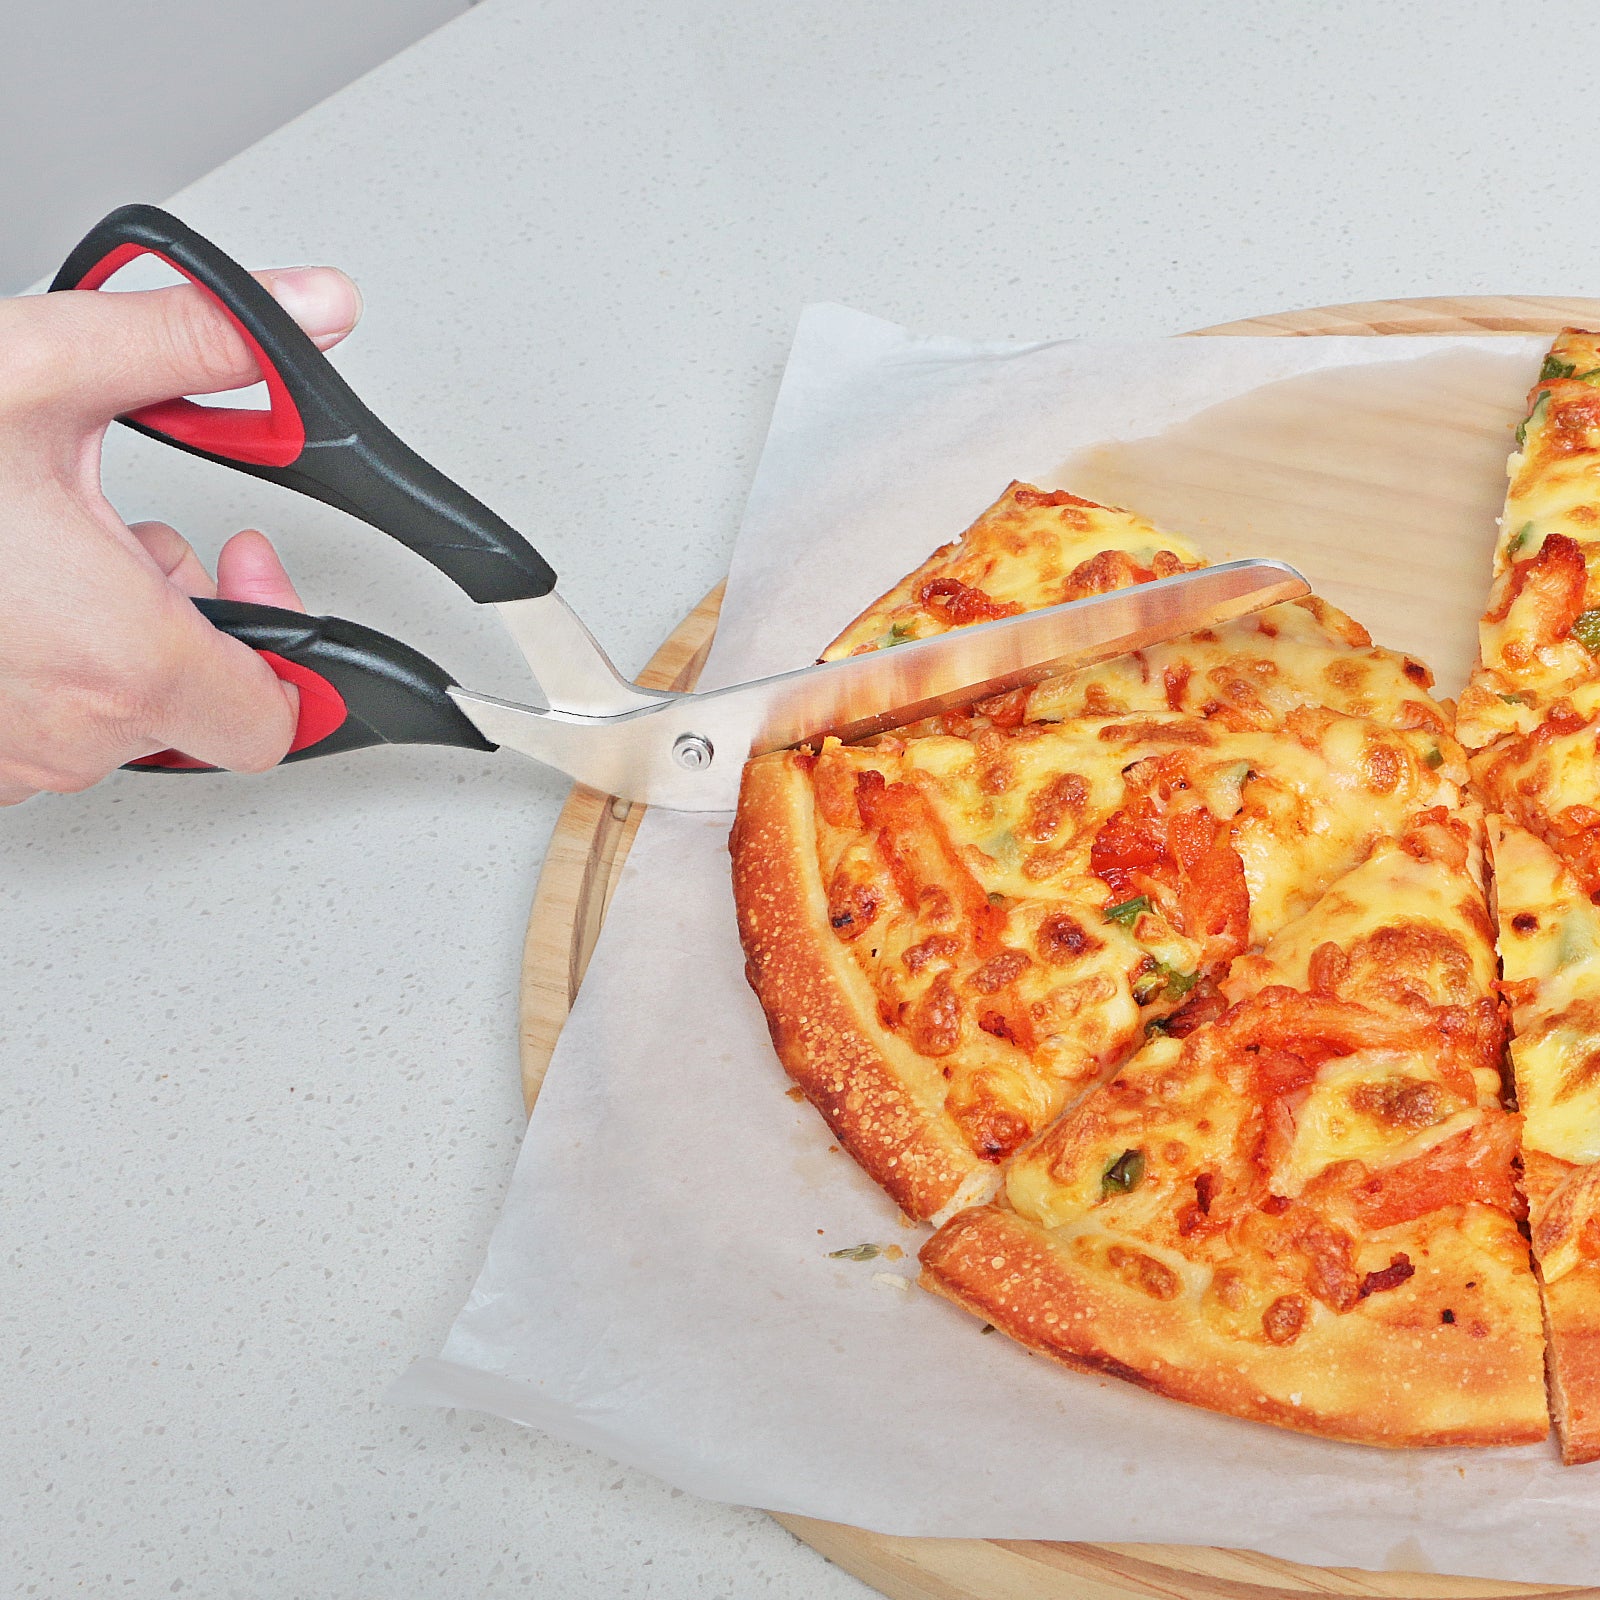 Asdirne Pizza Scissors, Pizza Cutter